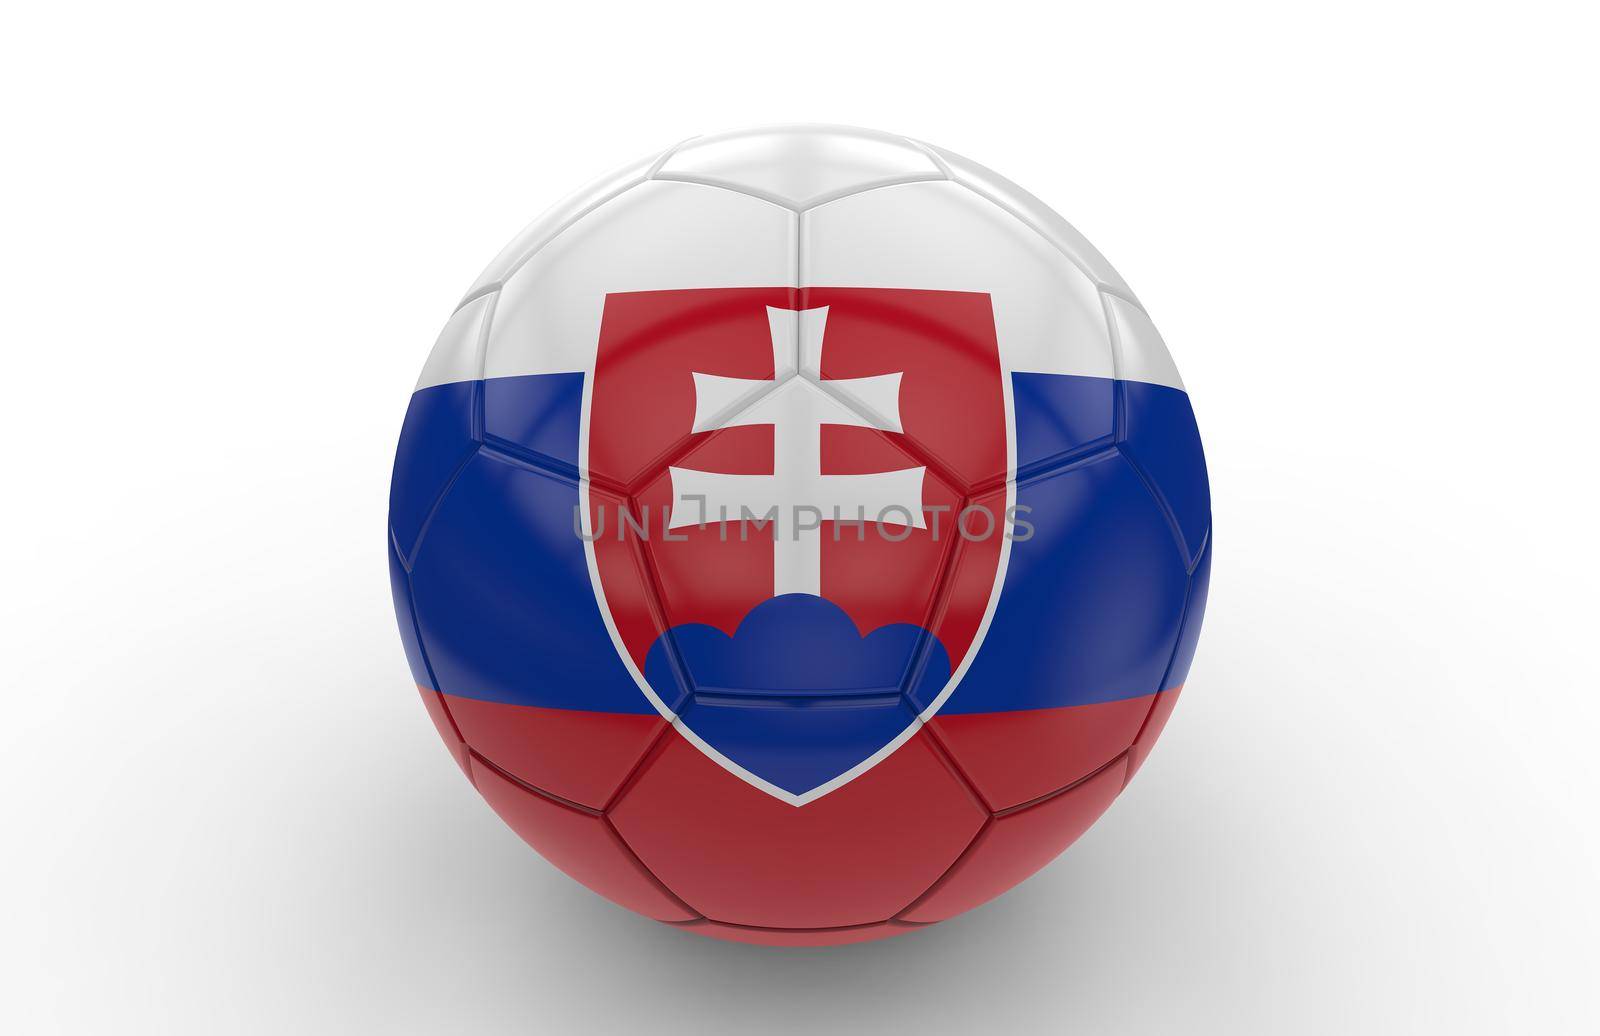 Soccer ball with slovakian flag by cla78